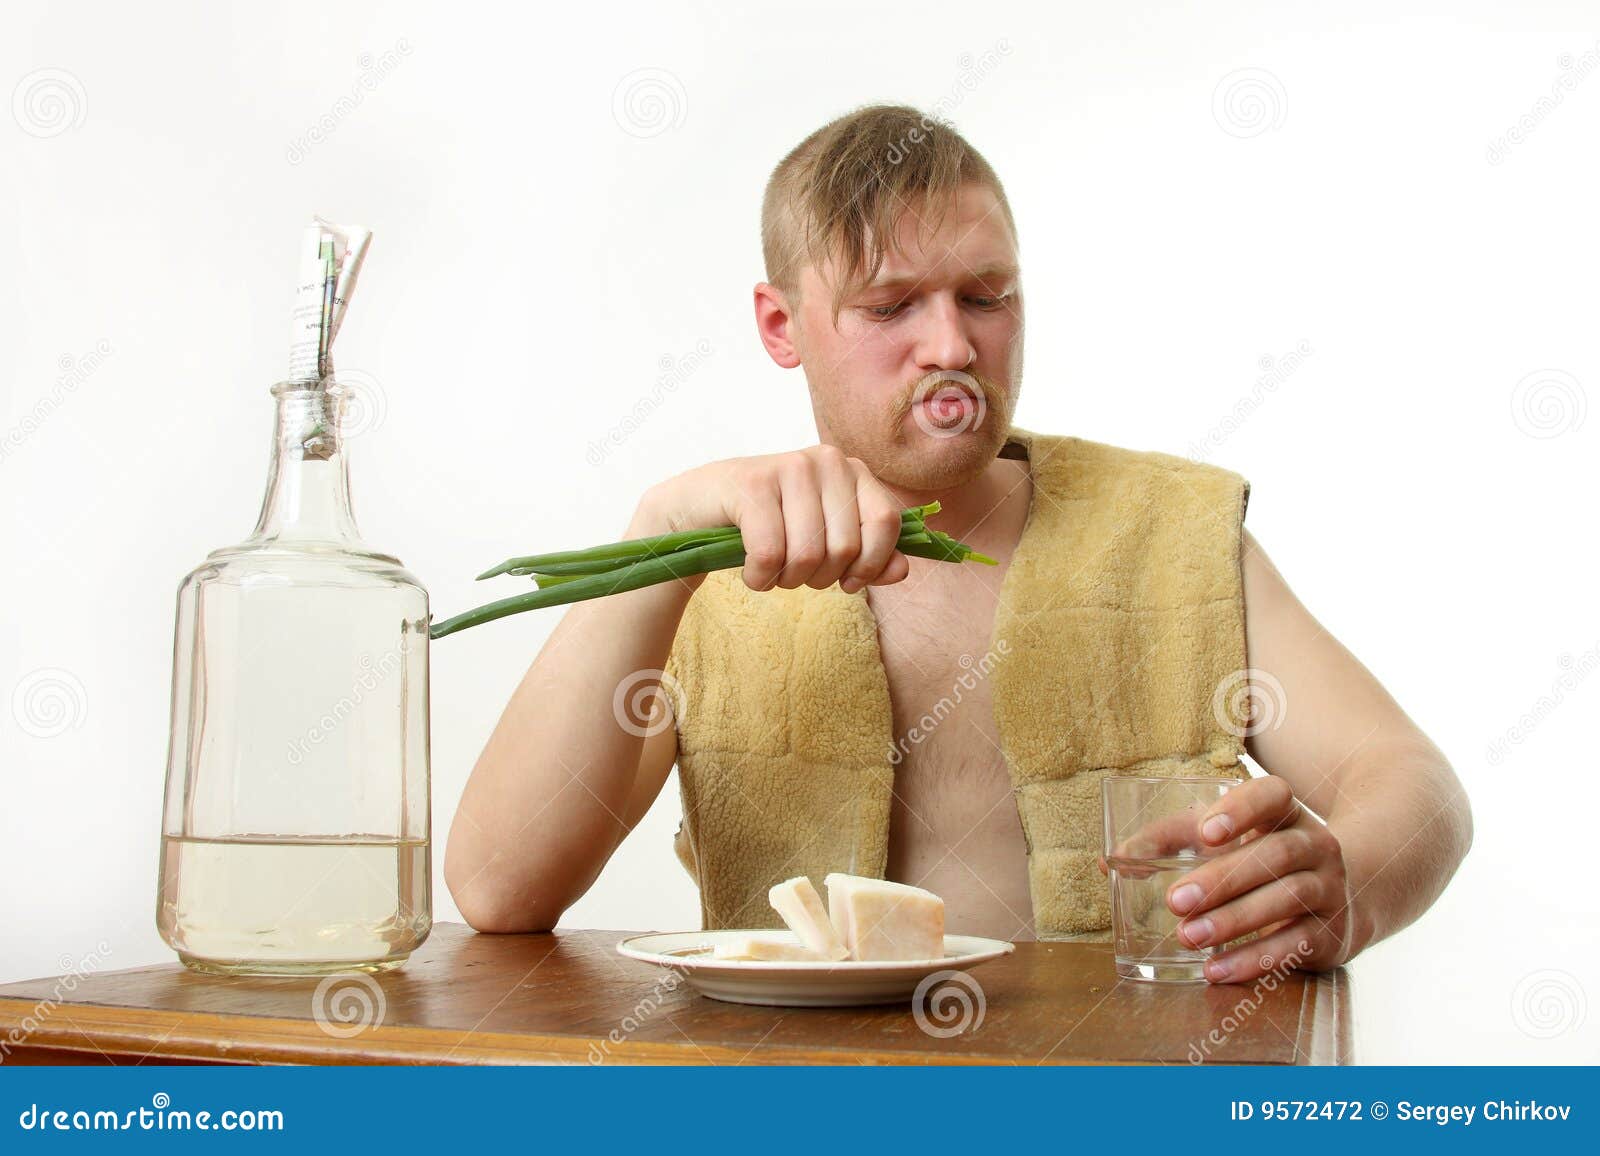 Муж пьет месяц. Закусывает луком. Мужик пьет и ест капусту. Пил и закусывал. Мужчины пьющие кефир скульптура.